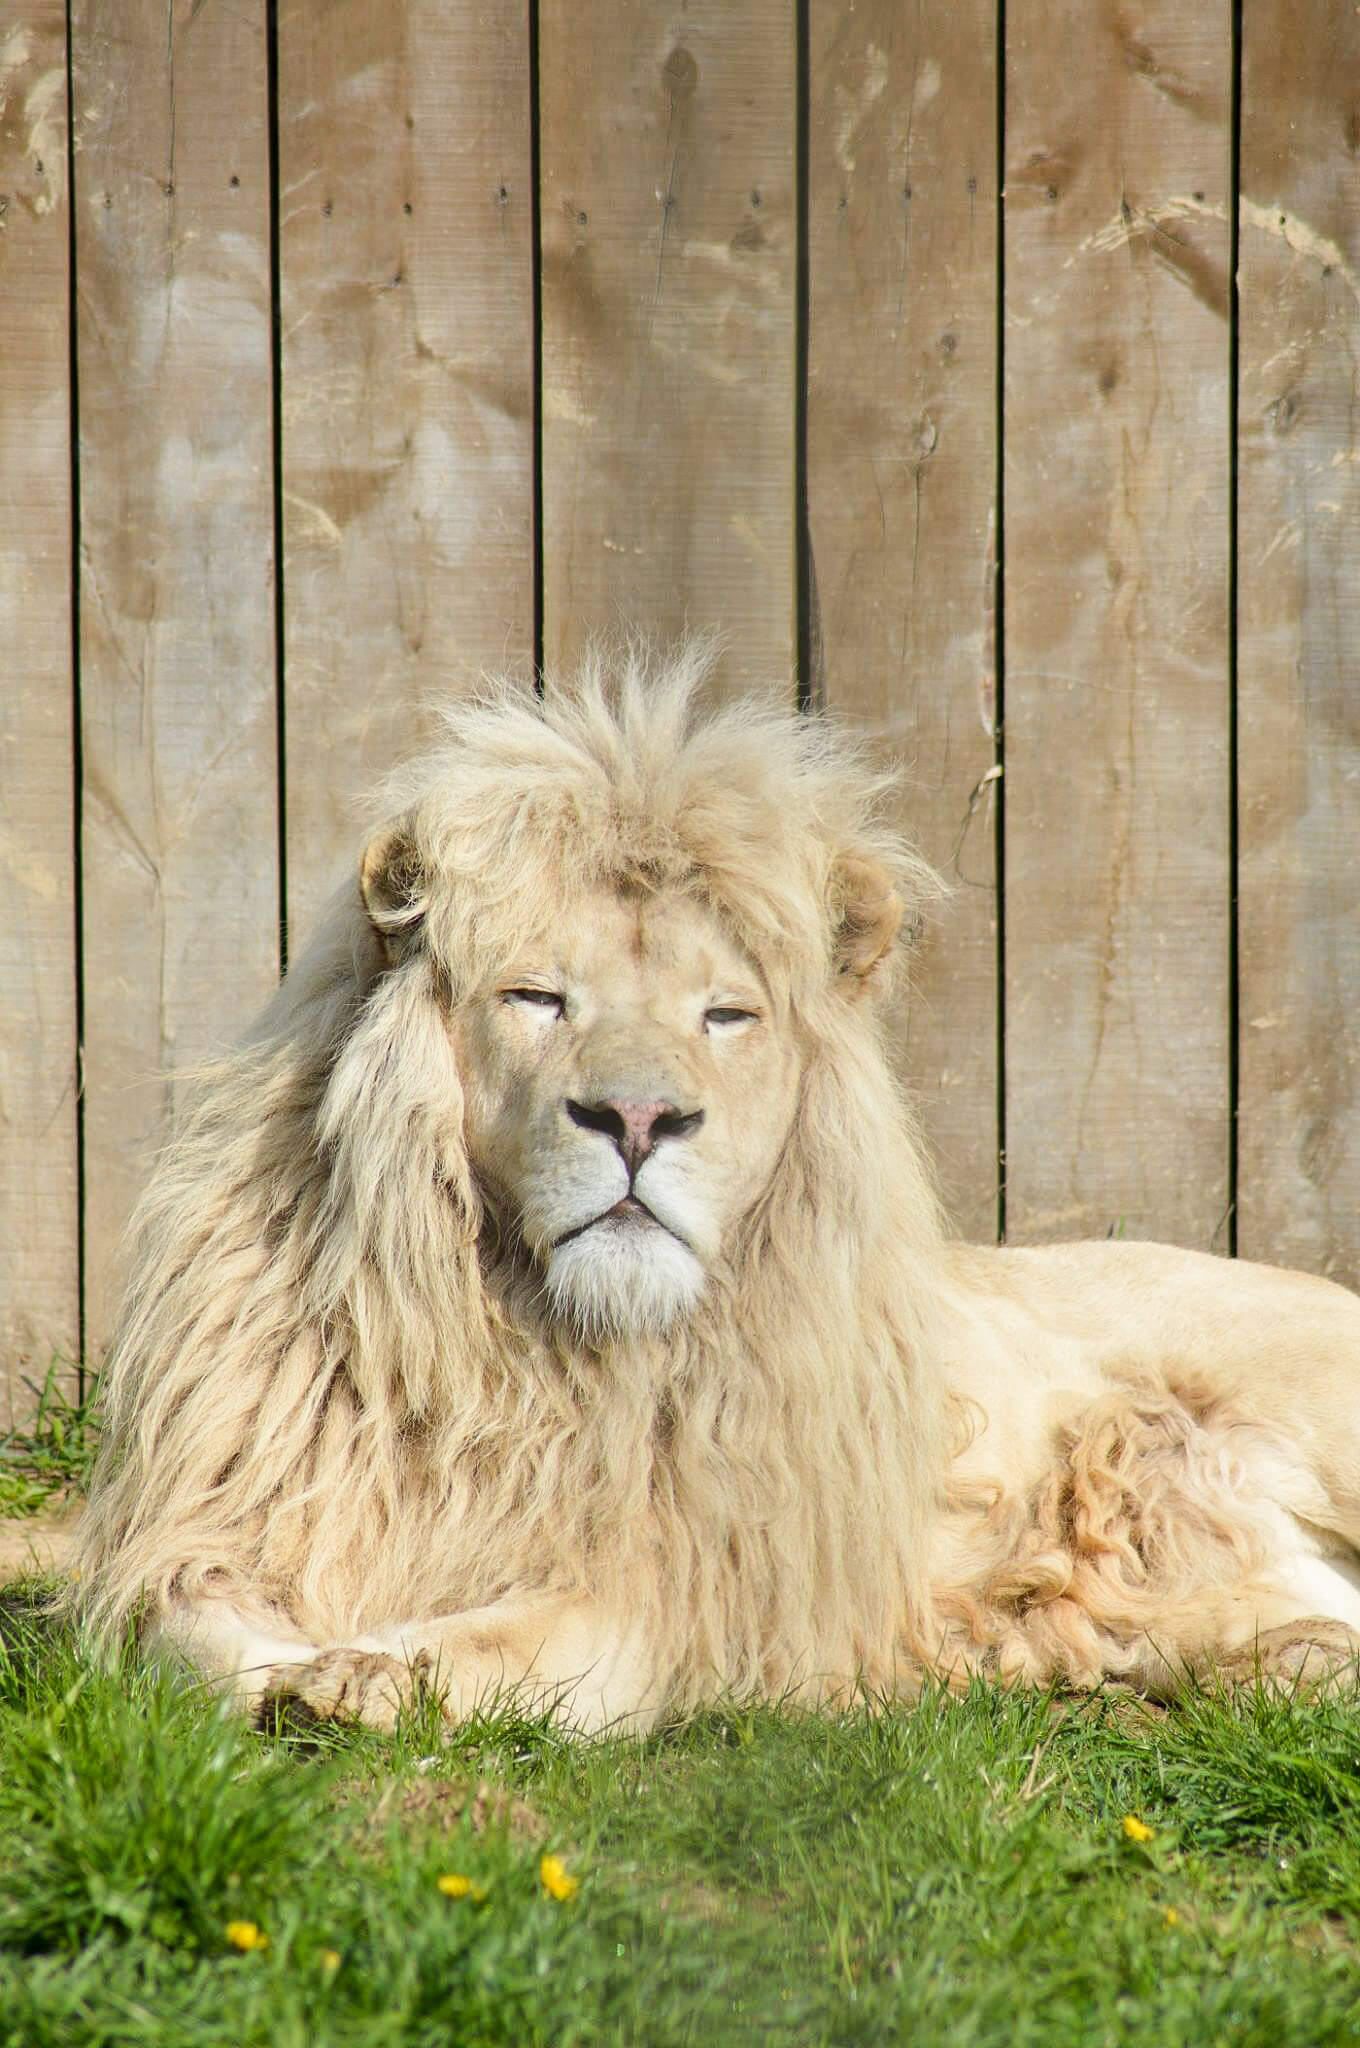 Nasz ukochany biały lew afrykański. Biały lew to rzadka mutacja kolorystyczna lwa, szczególnie lwa południowoafrykańskiego.